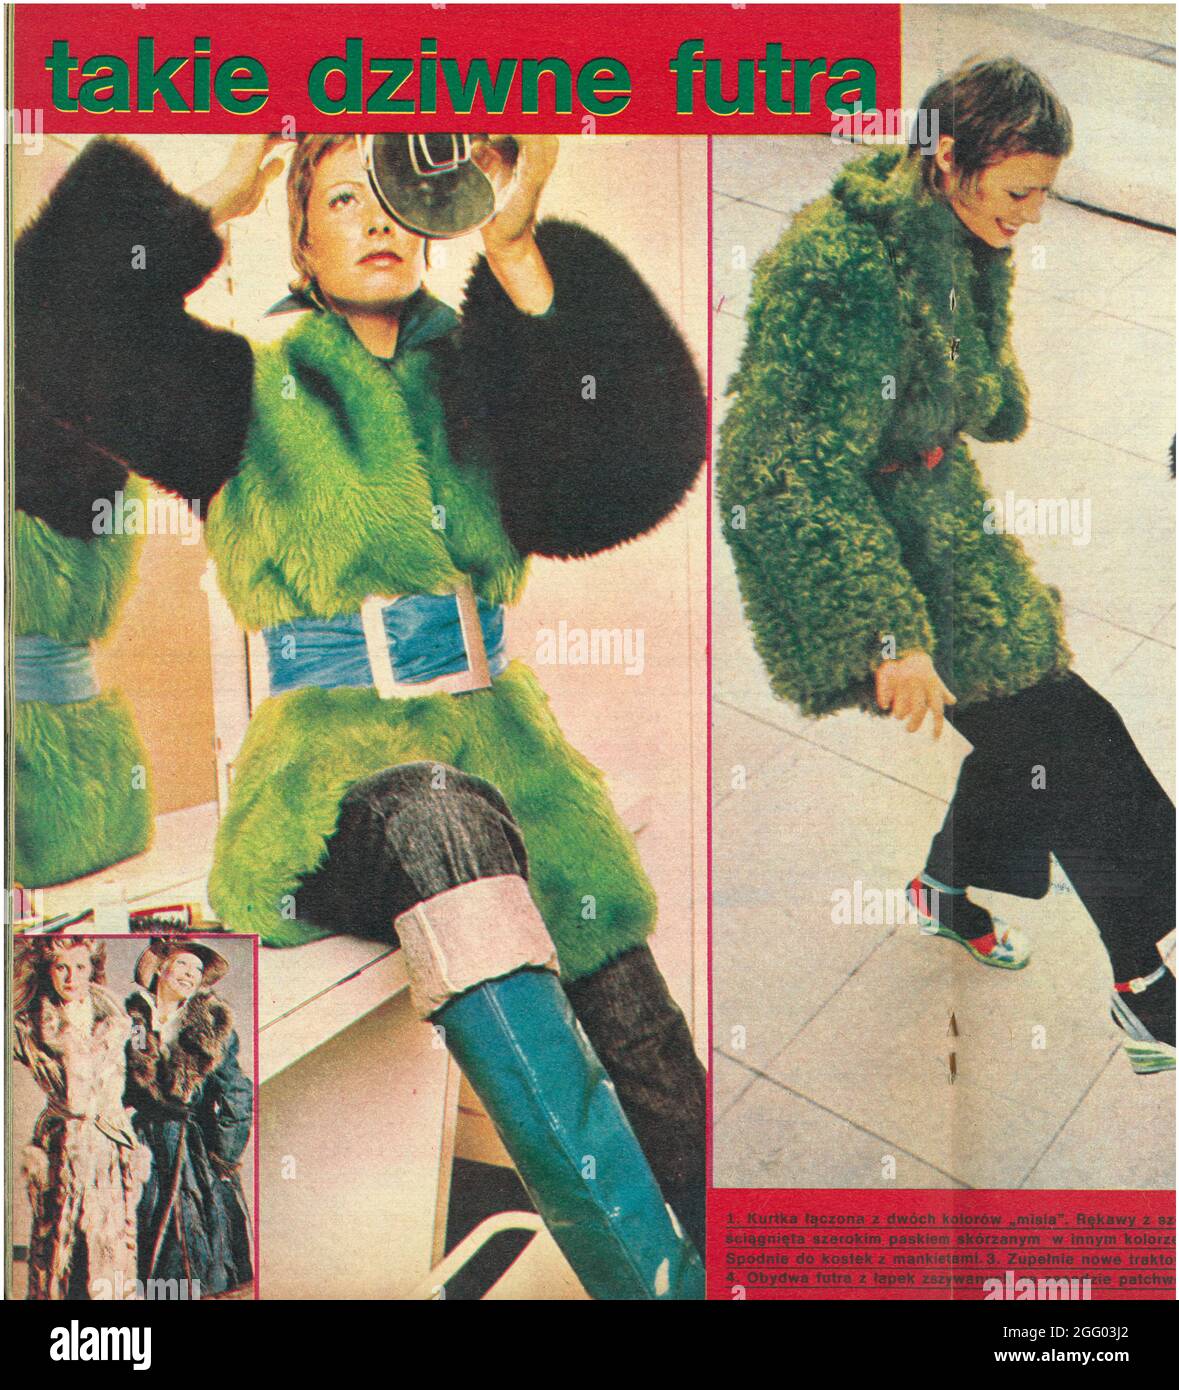 Vintage fashion photography retro photo collage clipping 1960s 1970s zdjęcie modowe vintage wycinek z gazety centerfold Stock Photo